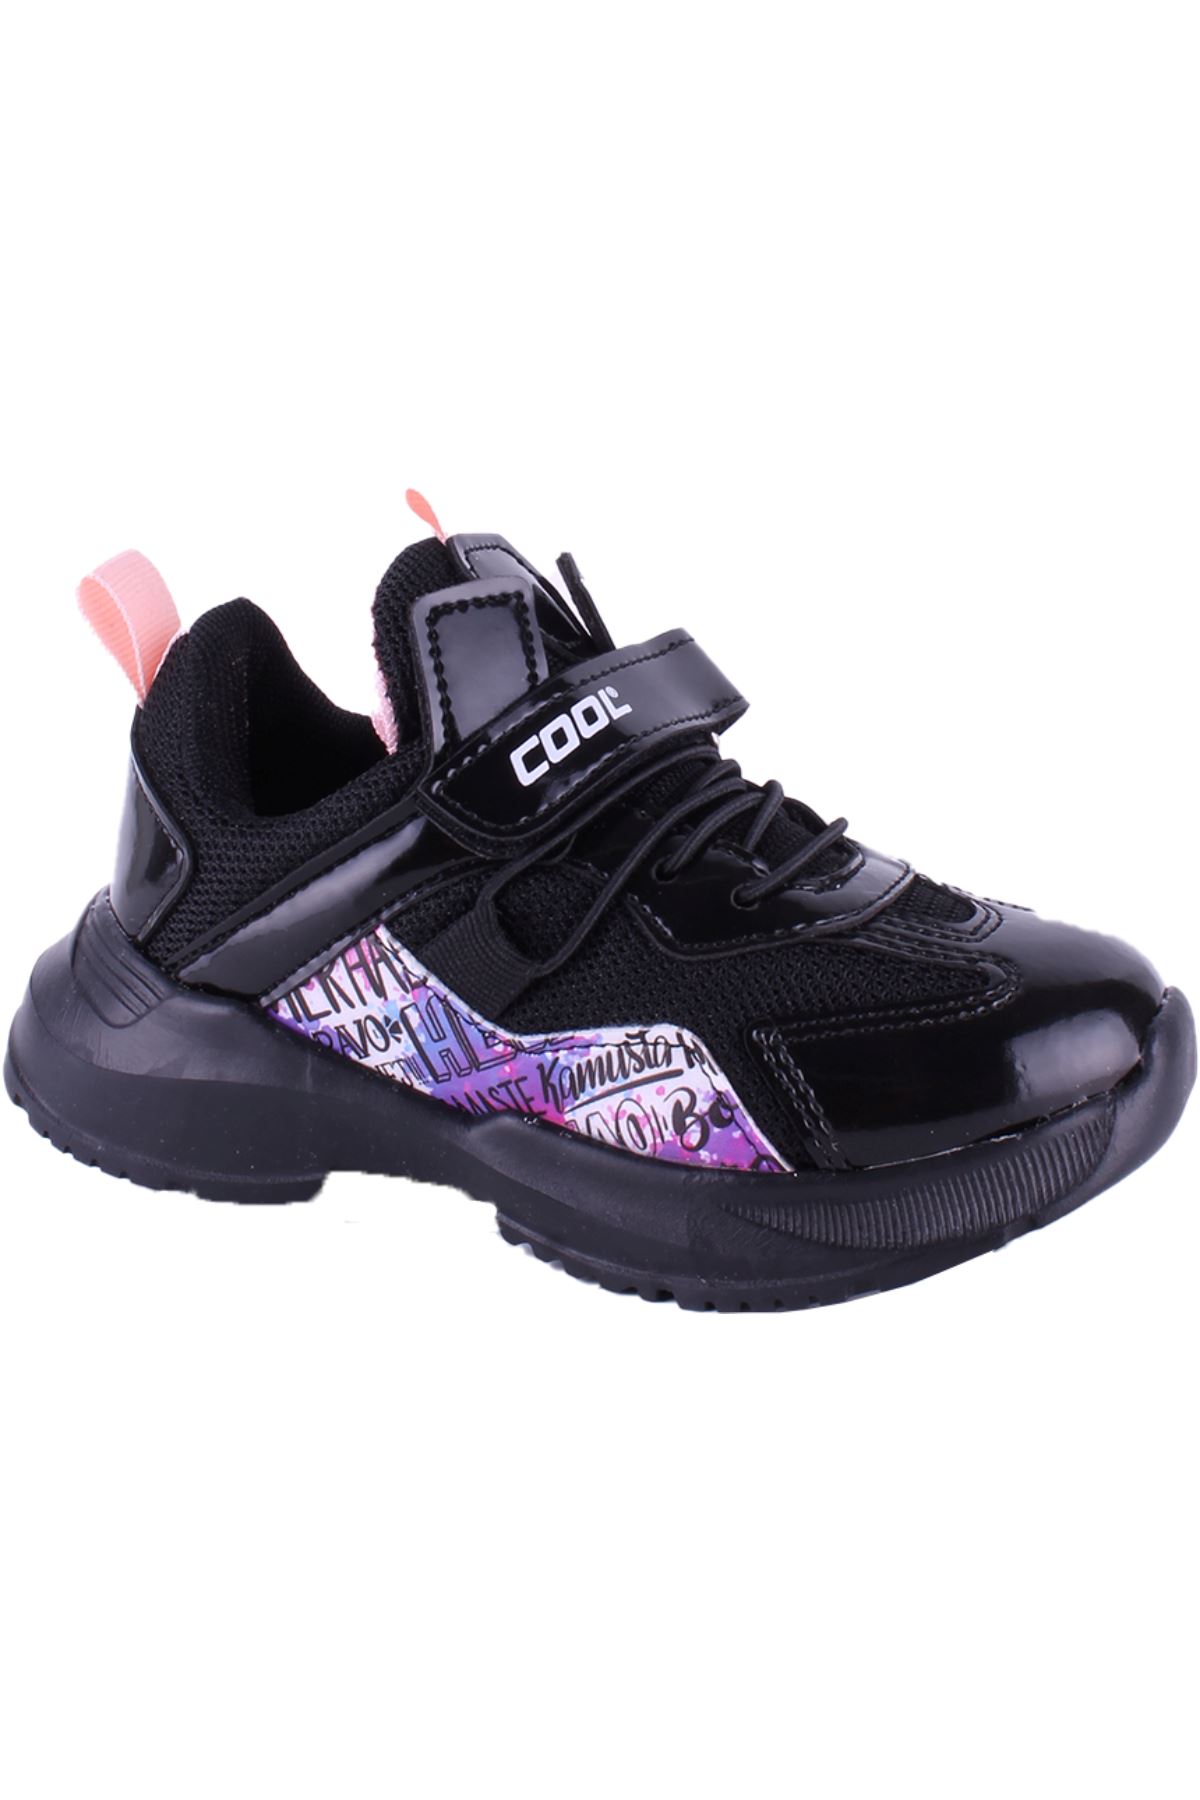 Giyinsen Unisex Siyah Spor Ayakkabı - 23KD36000042